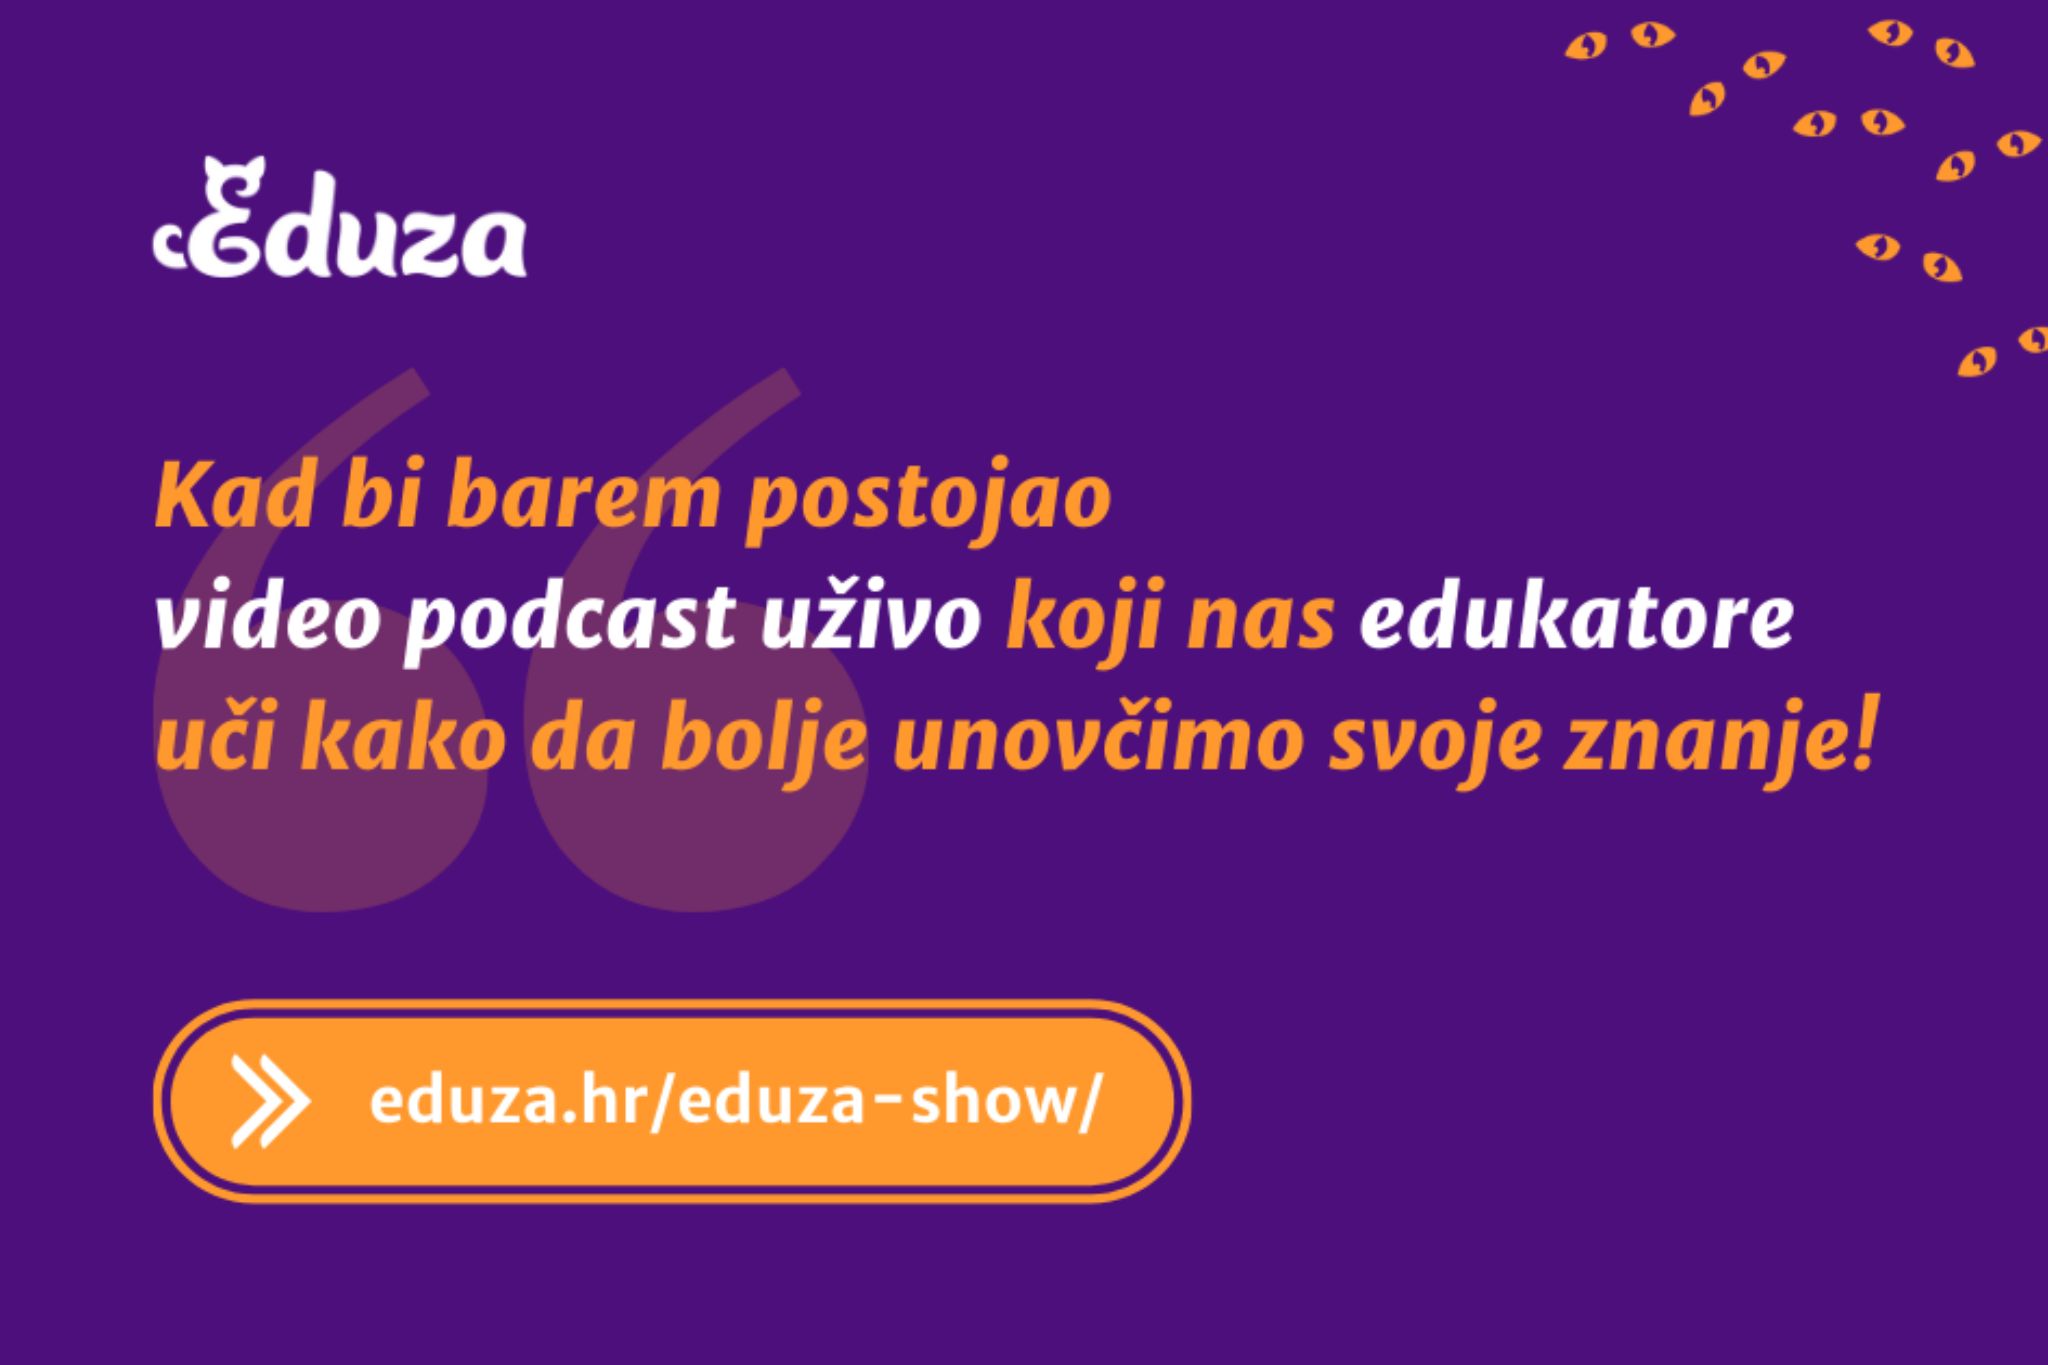 eduza podcast hrvatska